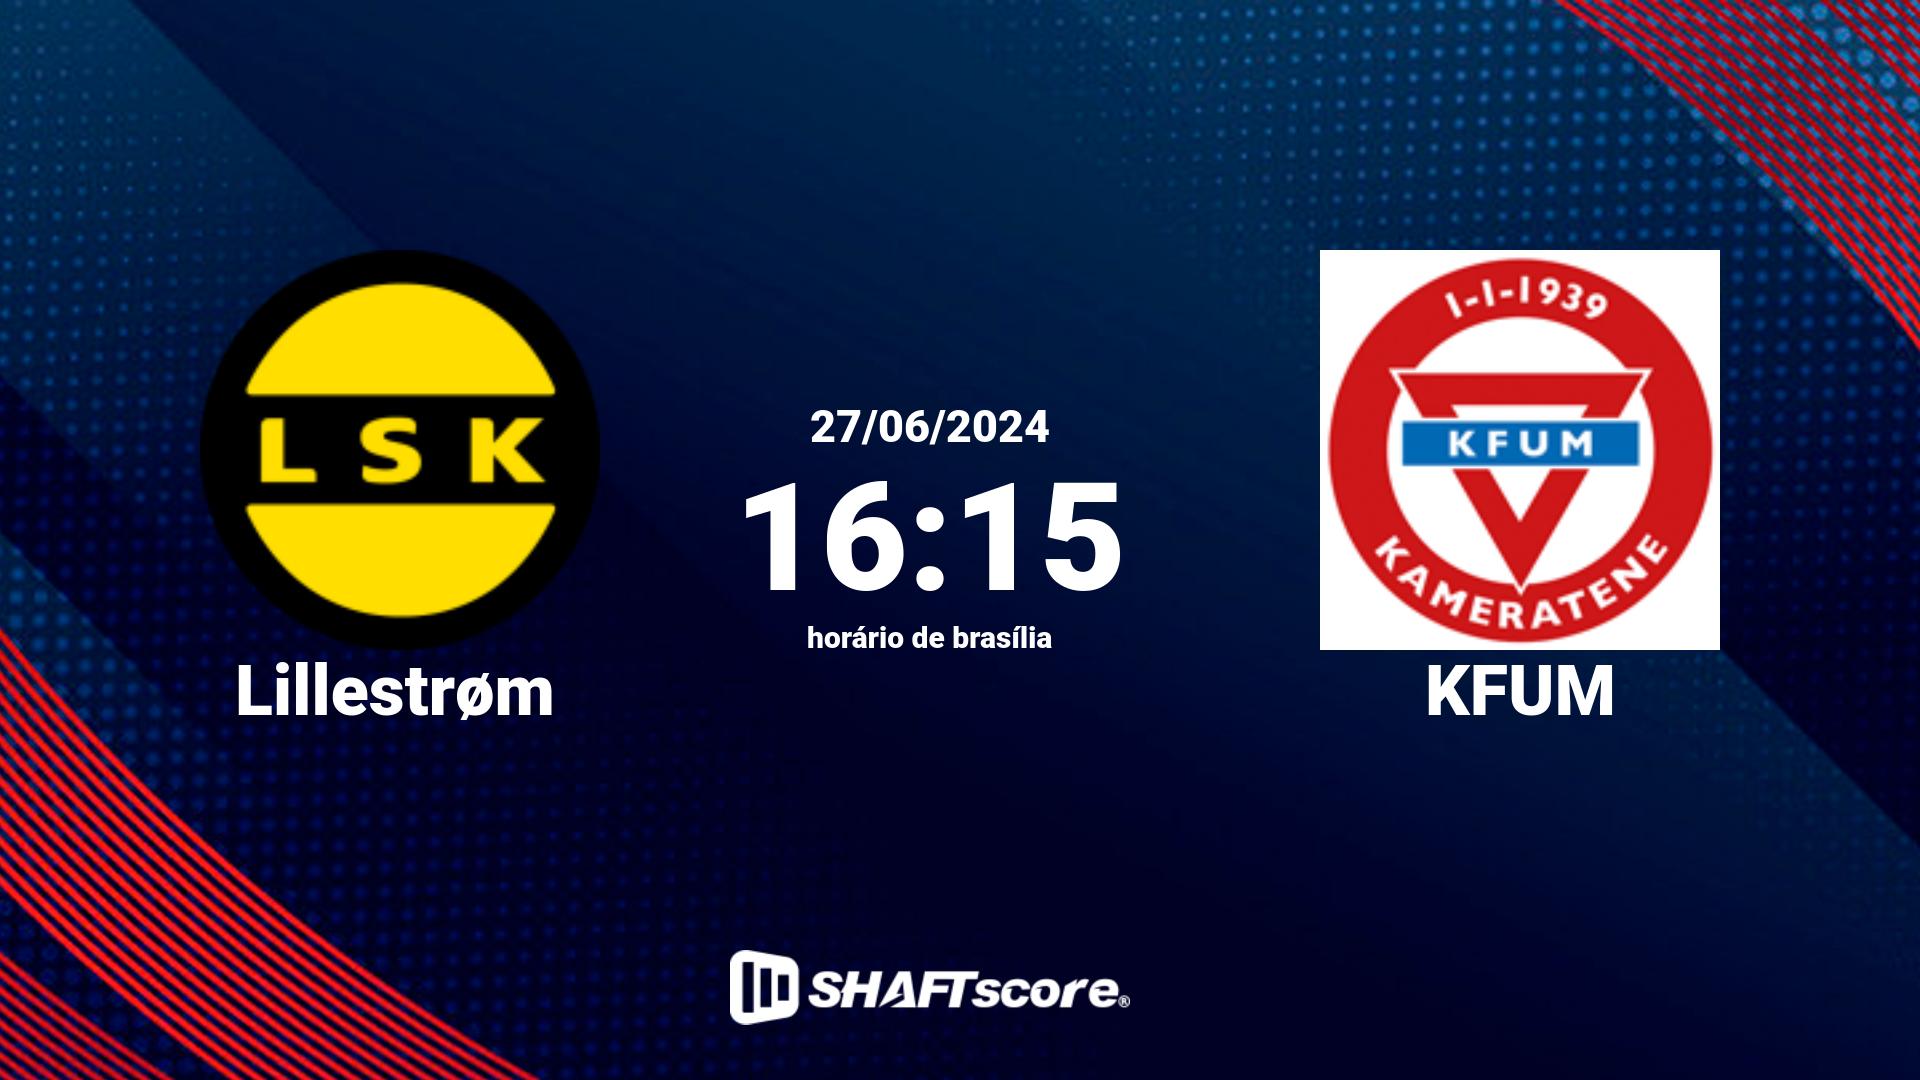 Estatísticas do jogo Lillestrøm vs KFUM 27.06 16:15